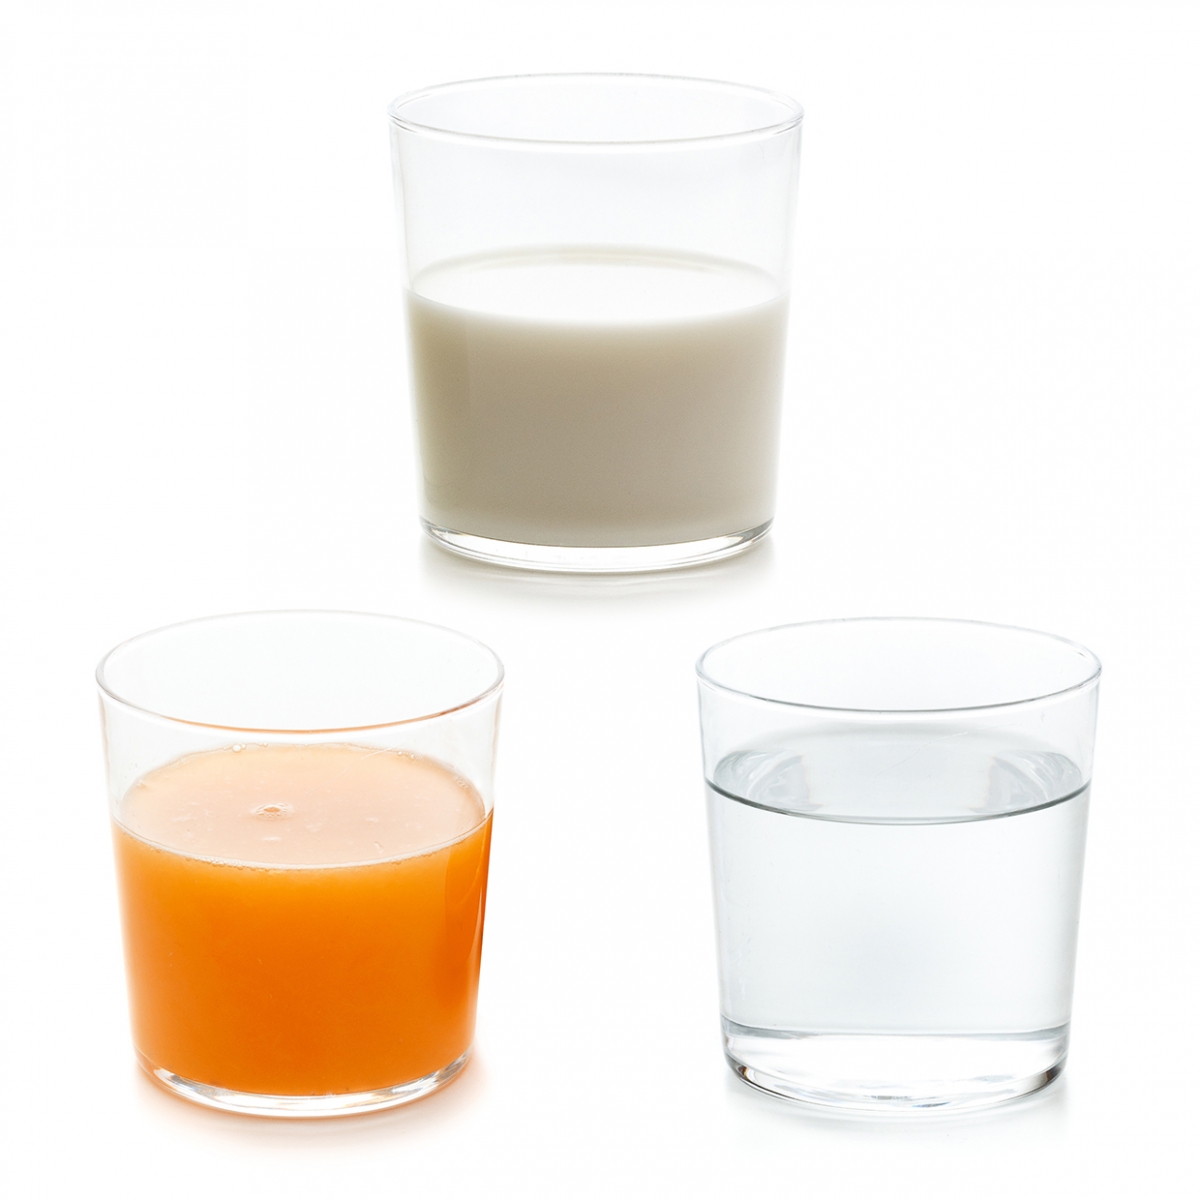 Imagen en la que se ven tres bebidas: un vaso de zumo, un vaso de agua y un vaso de leche